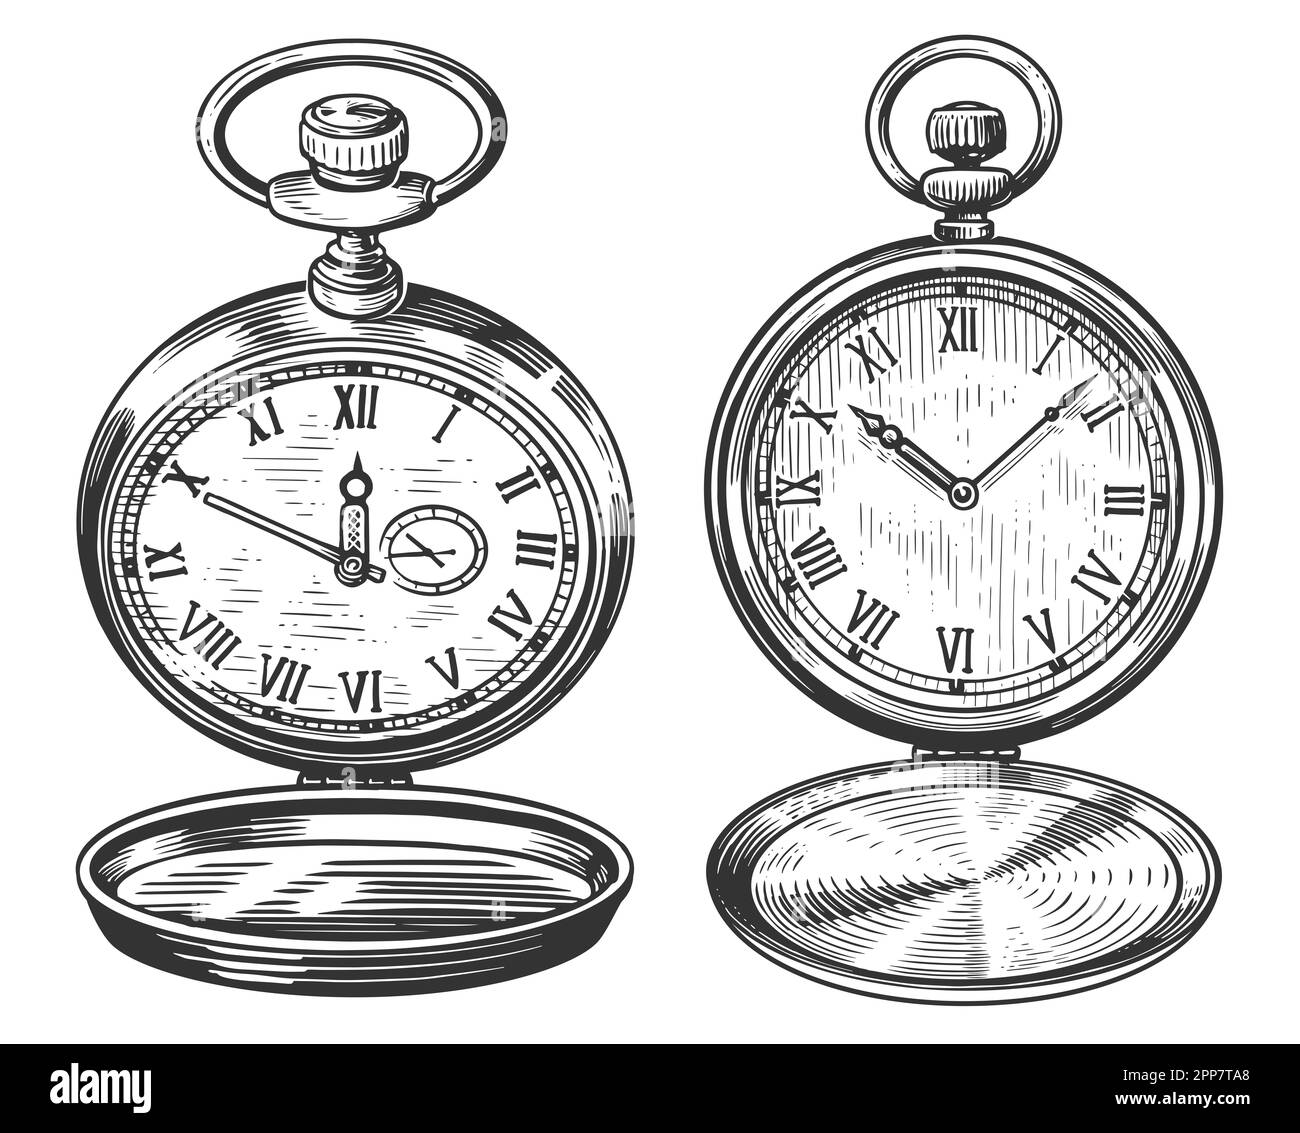 Montre de poche rétro avec couvercle. Horloge vintage isolée. Illustration d'esquisse dessinée à la main dans un style de gravure ancien Banque D'Images